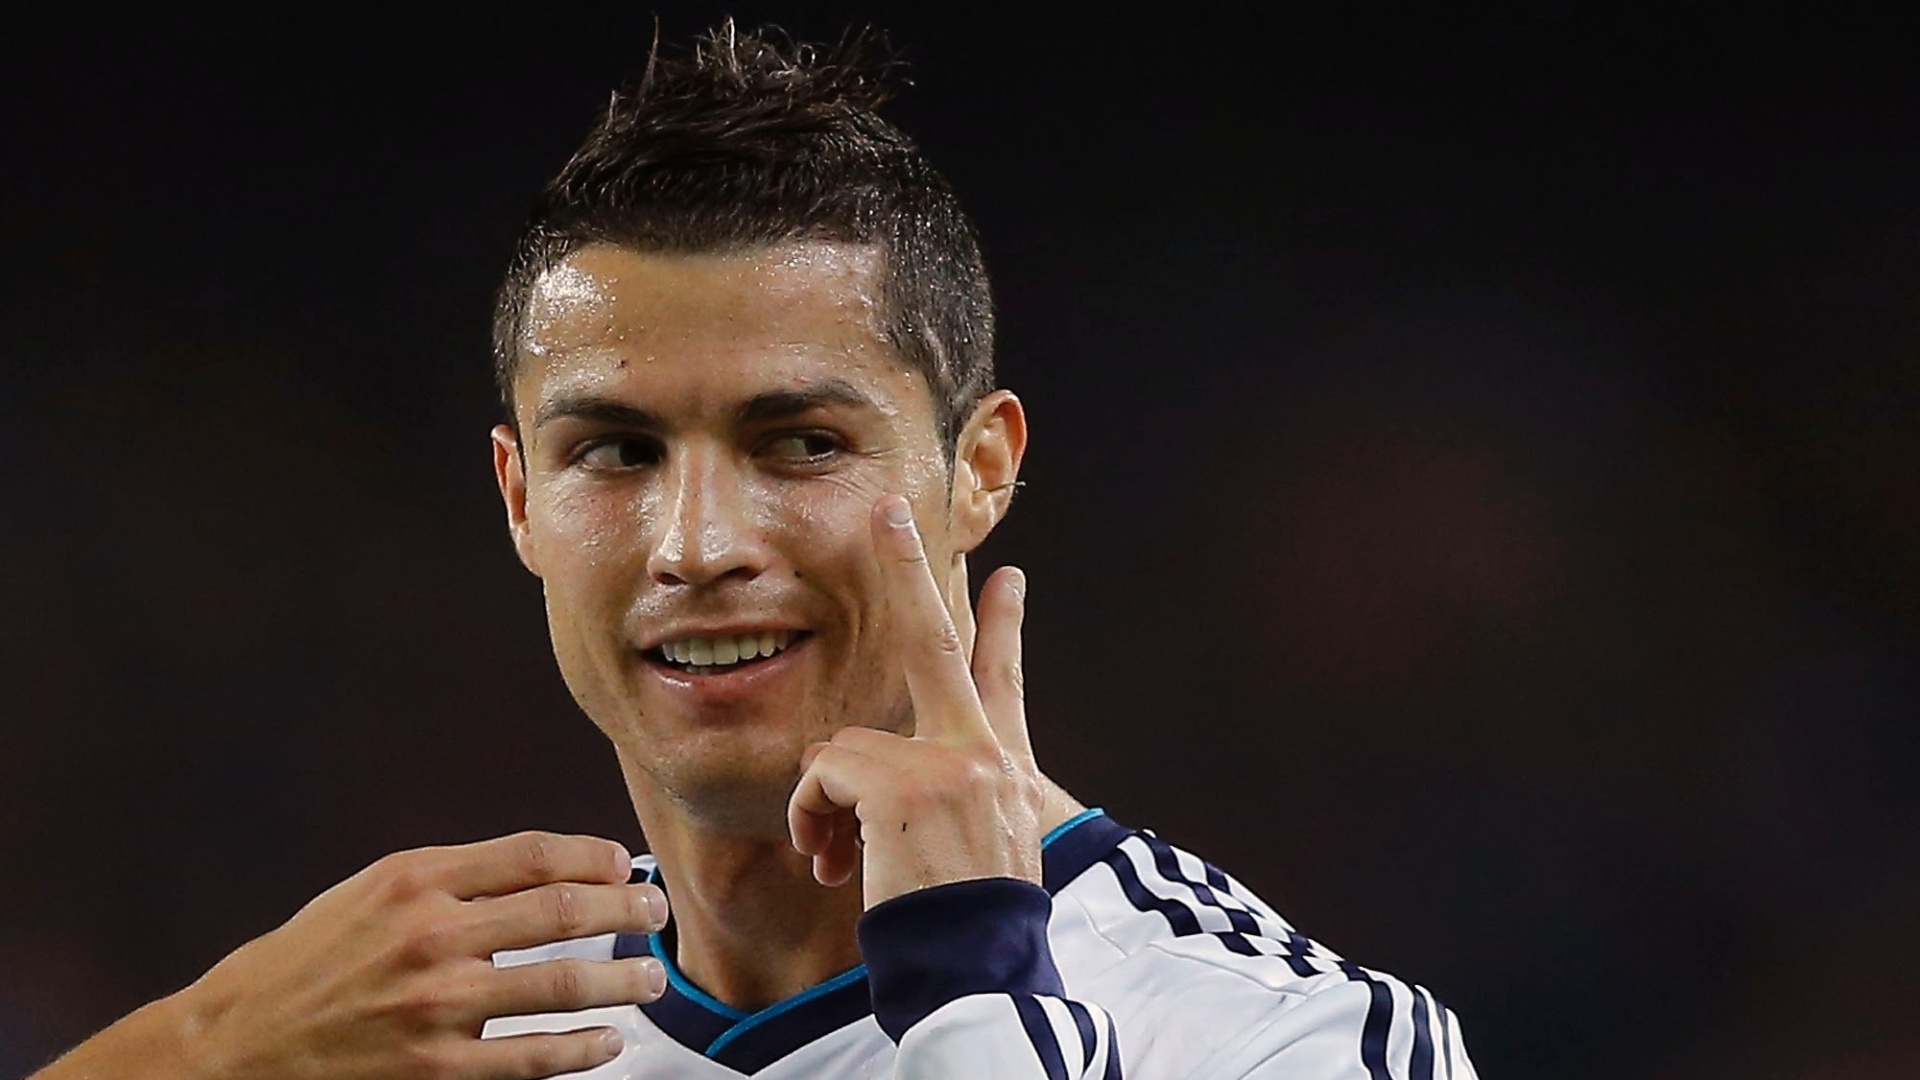 Portuguese FootBall Player Cristiano Ronaldo bio